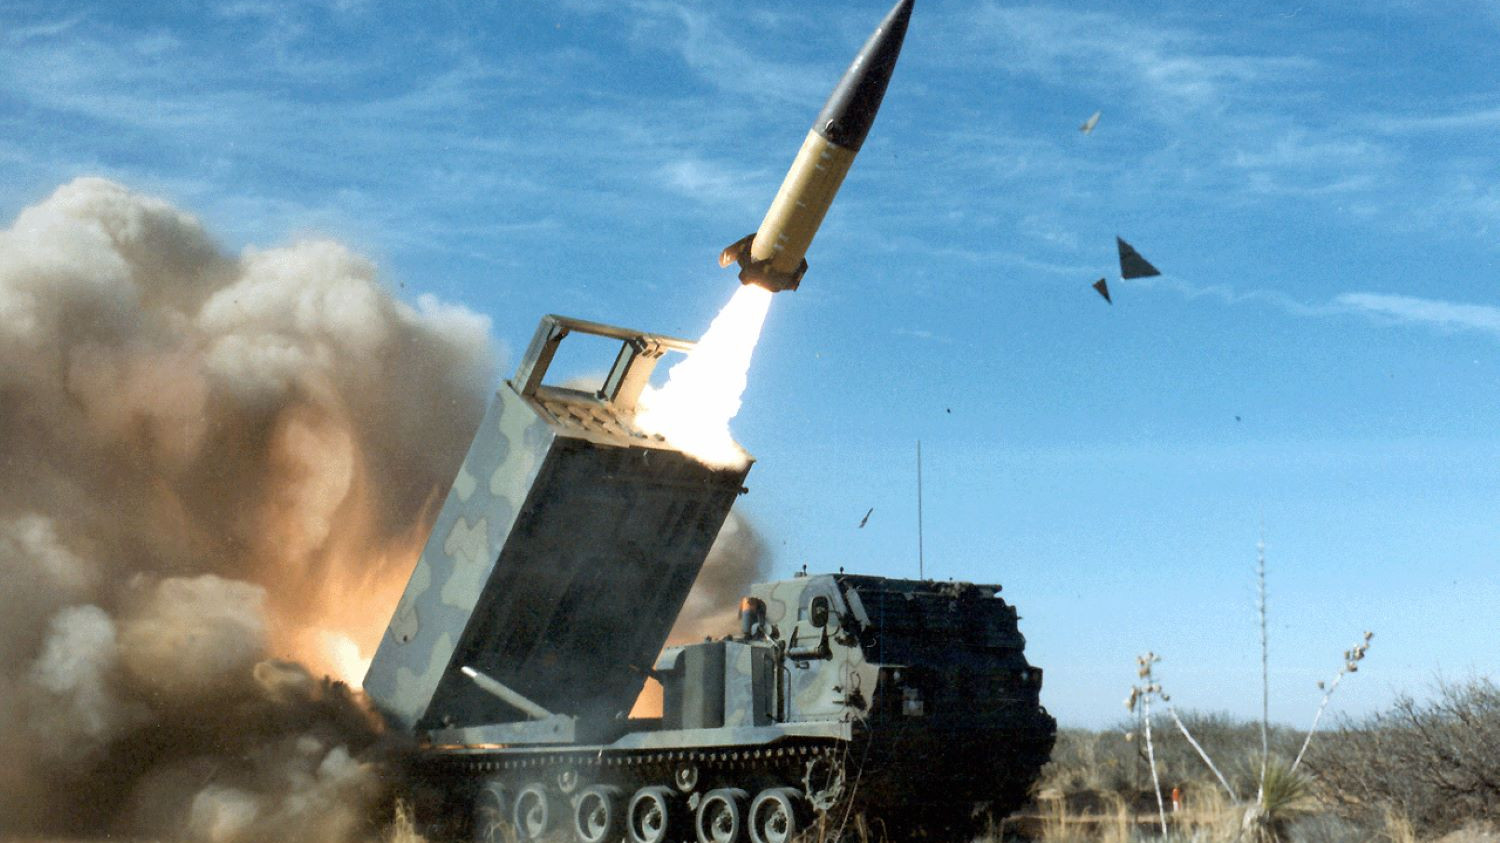 atacms himars nagy hatotavolsagu raketa amerikai egyesult allamok orosz ukran haboru 612731